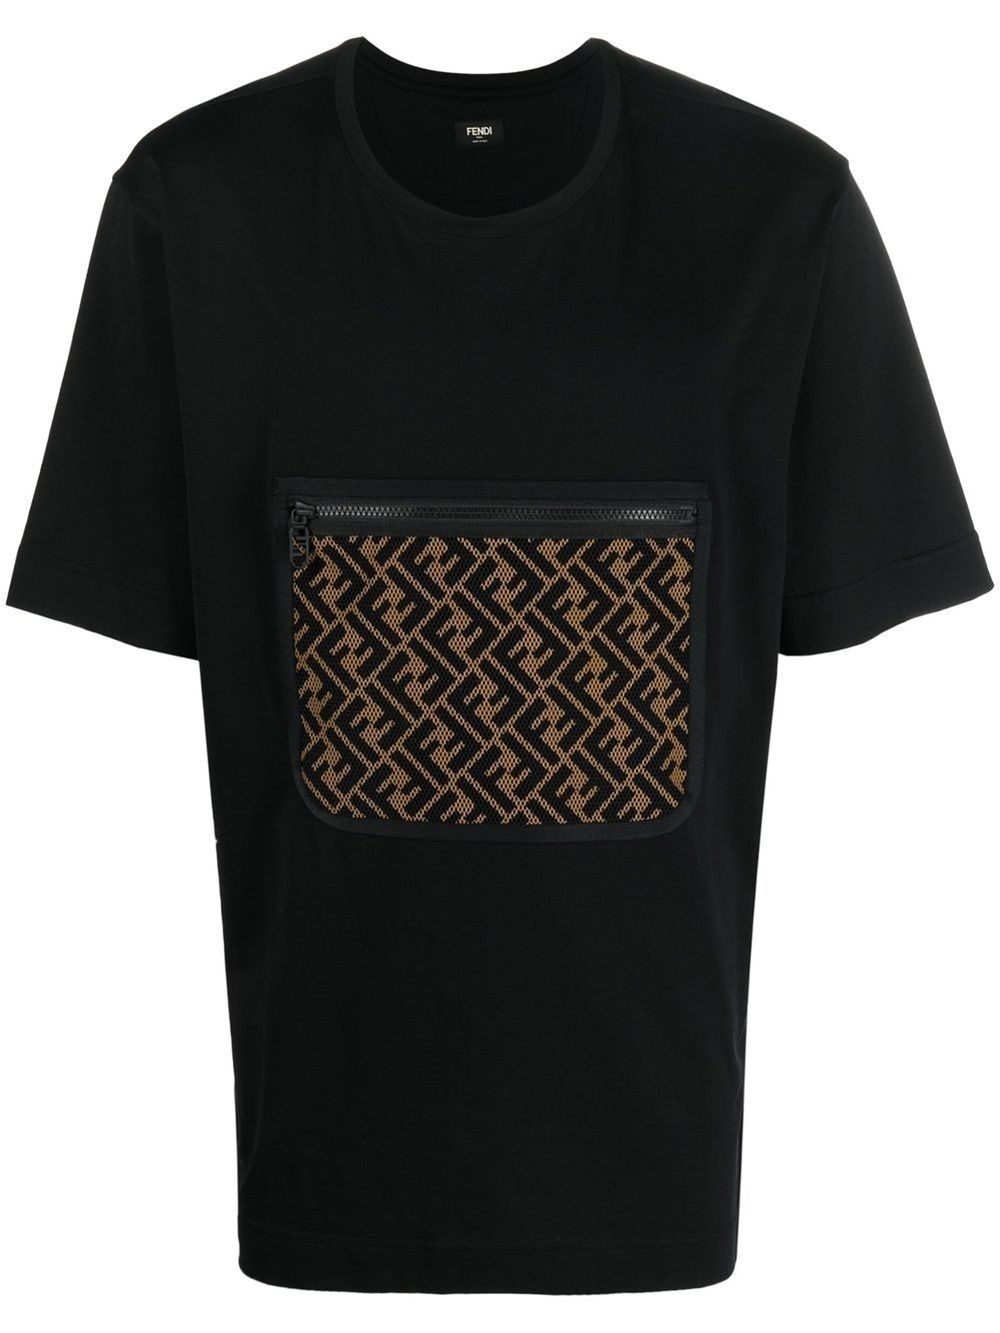 FF-pocket cotton T-shirt | FENDI | Eraldo.com FR